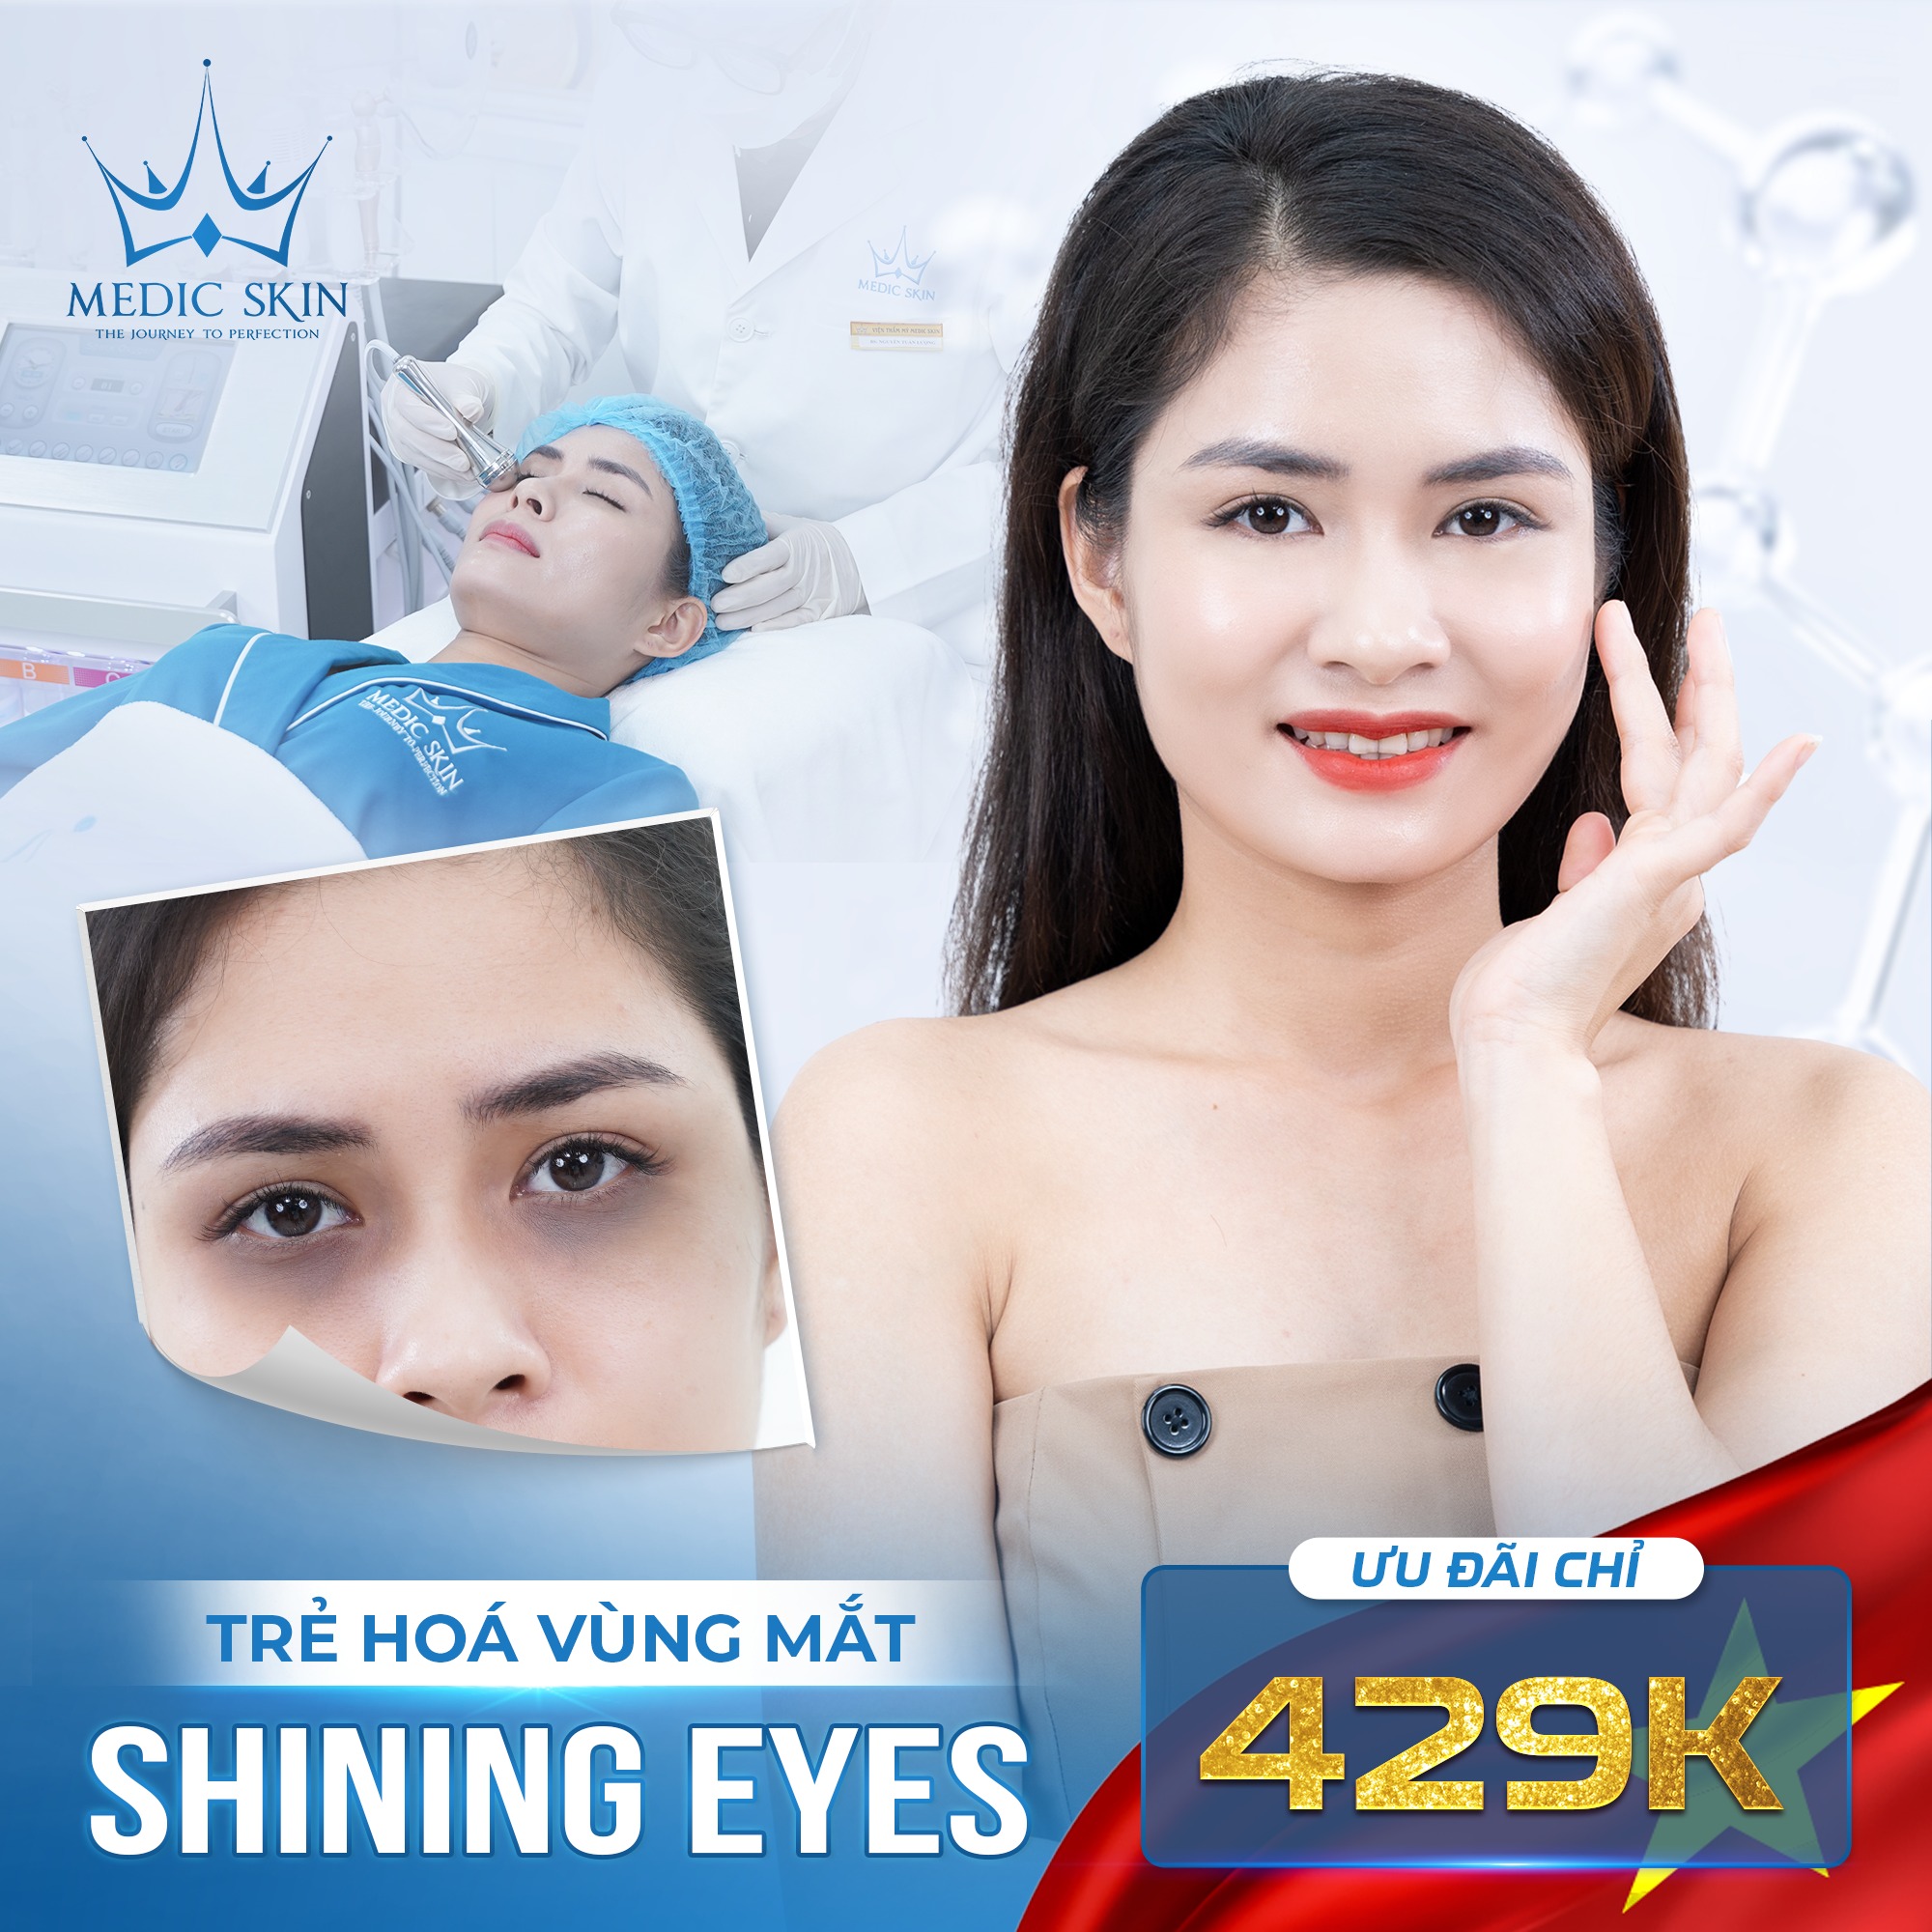 Trẻ hóa vùng mắt Shining Eyes: chỉ 429K 